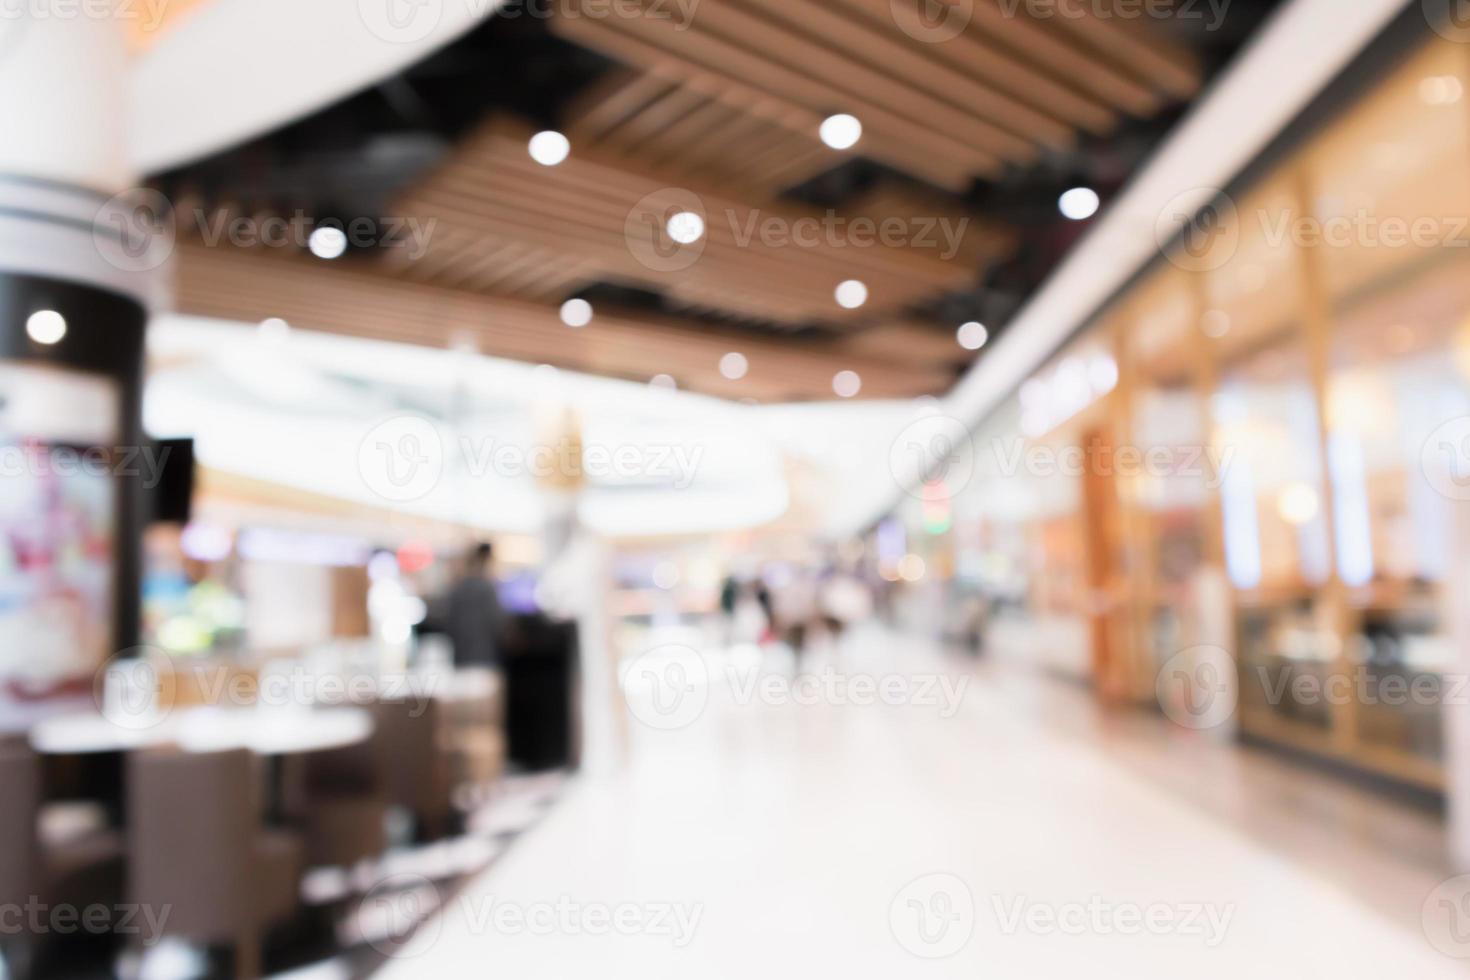 sfocatura astratta sfondo sfocato interno moderno centro commerciale foto